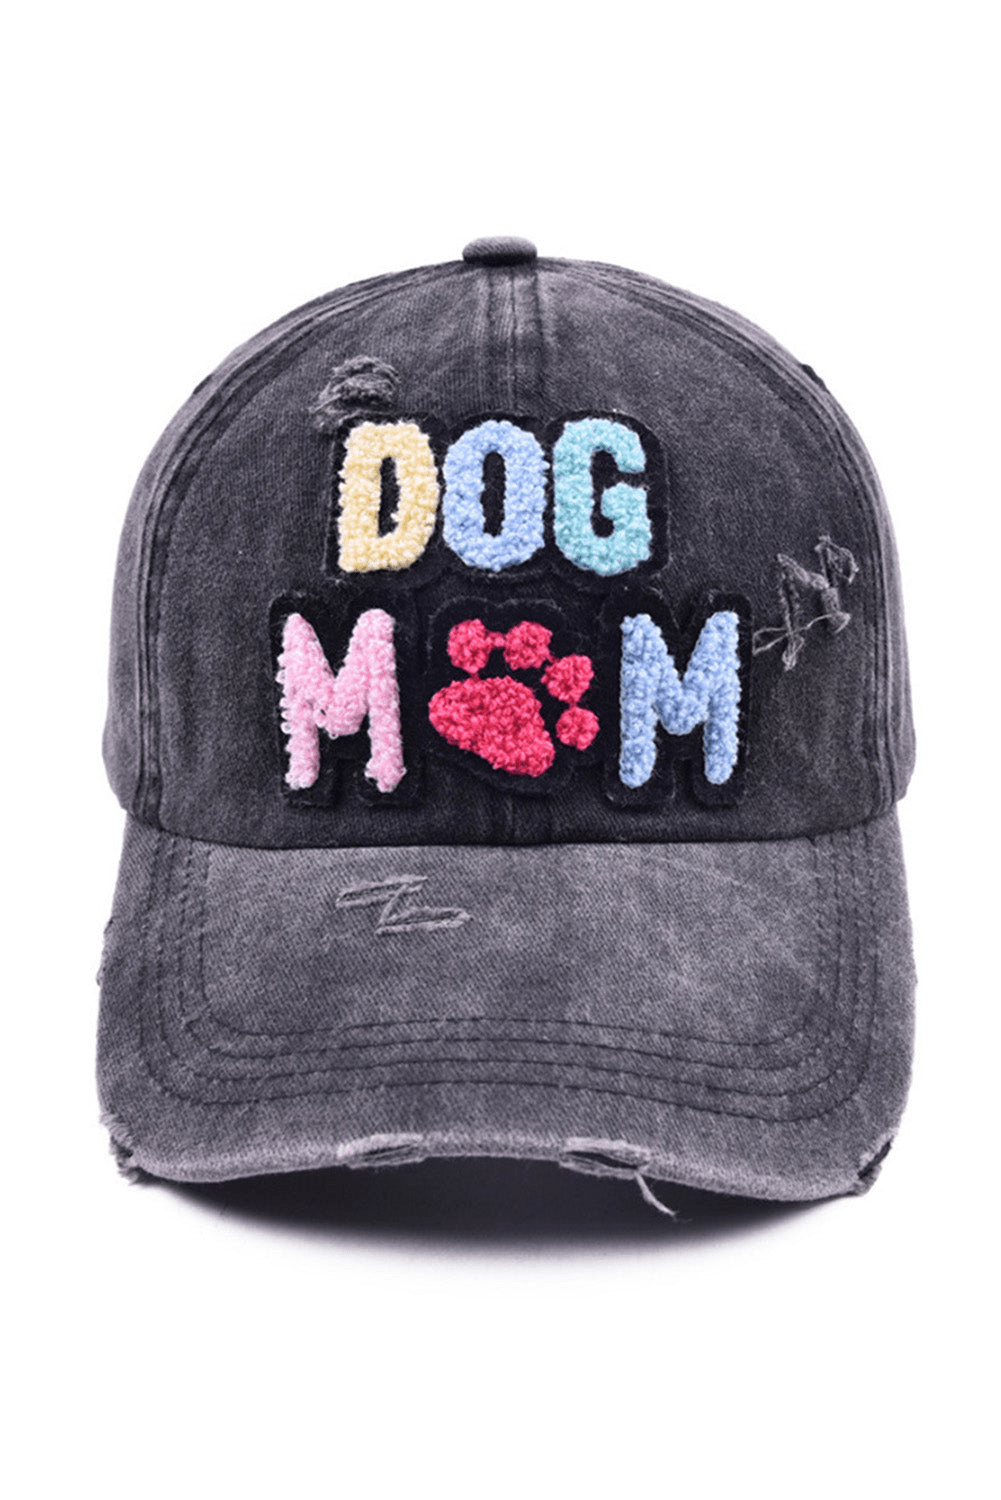 Dog and Pet Stuff Black / ONE SIZE / cotton DOG MAMA Baseball Cap